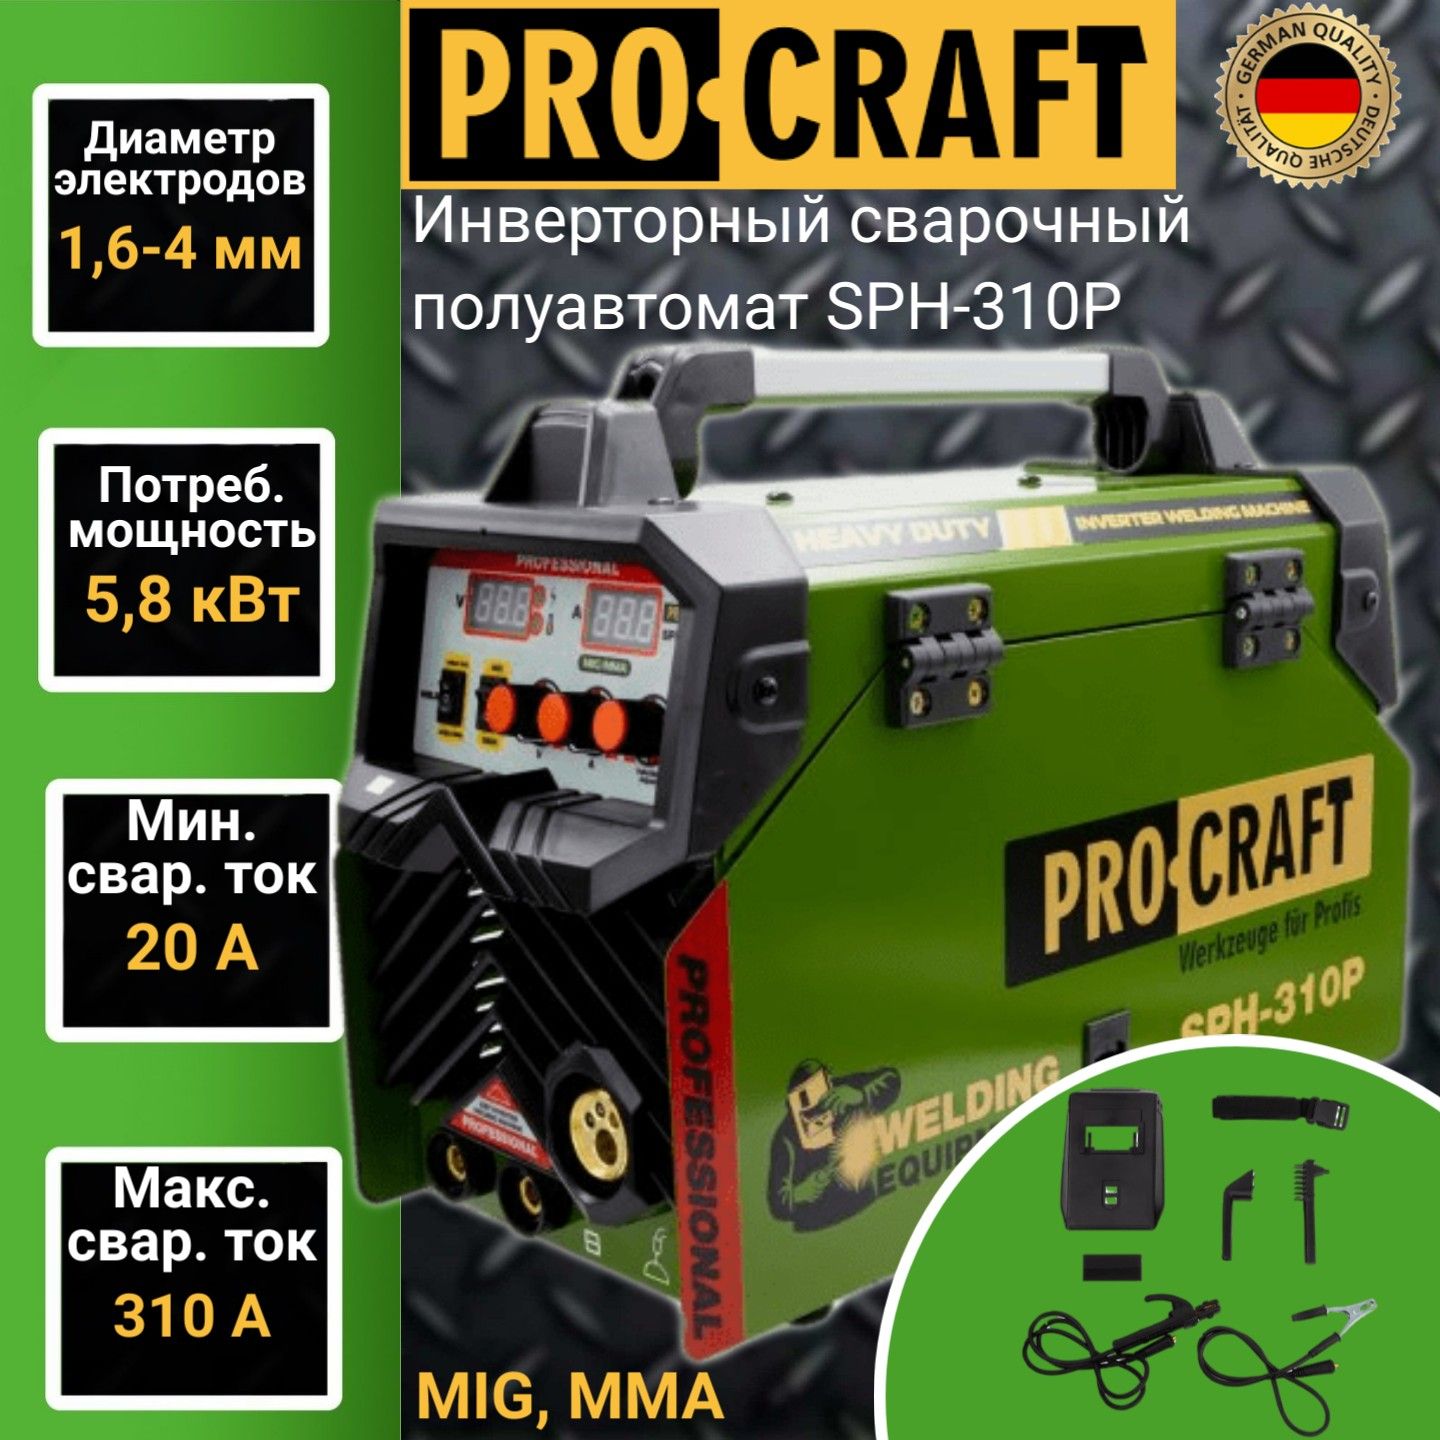 Сварочный полуавтомат Procraft SPH-310P (работа проволокой), электроды 1.6-4мм, MIG-MMA